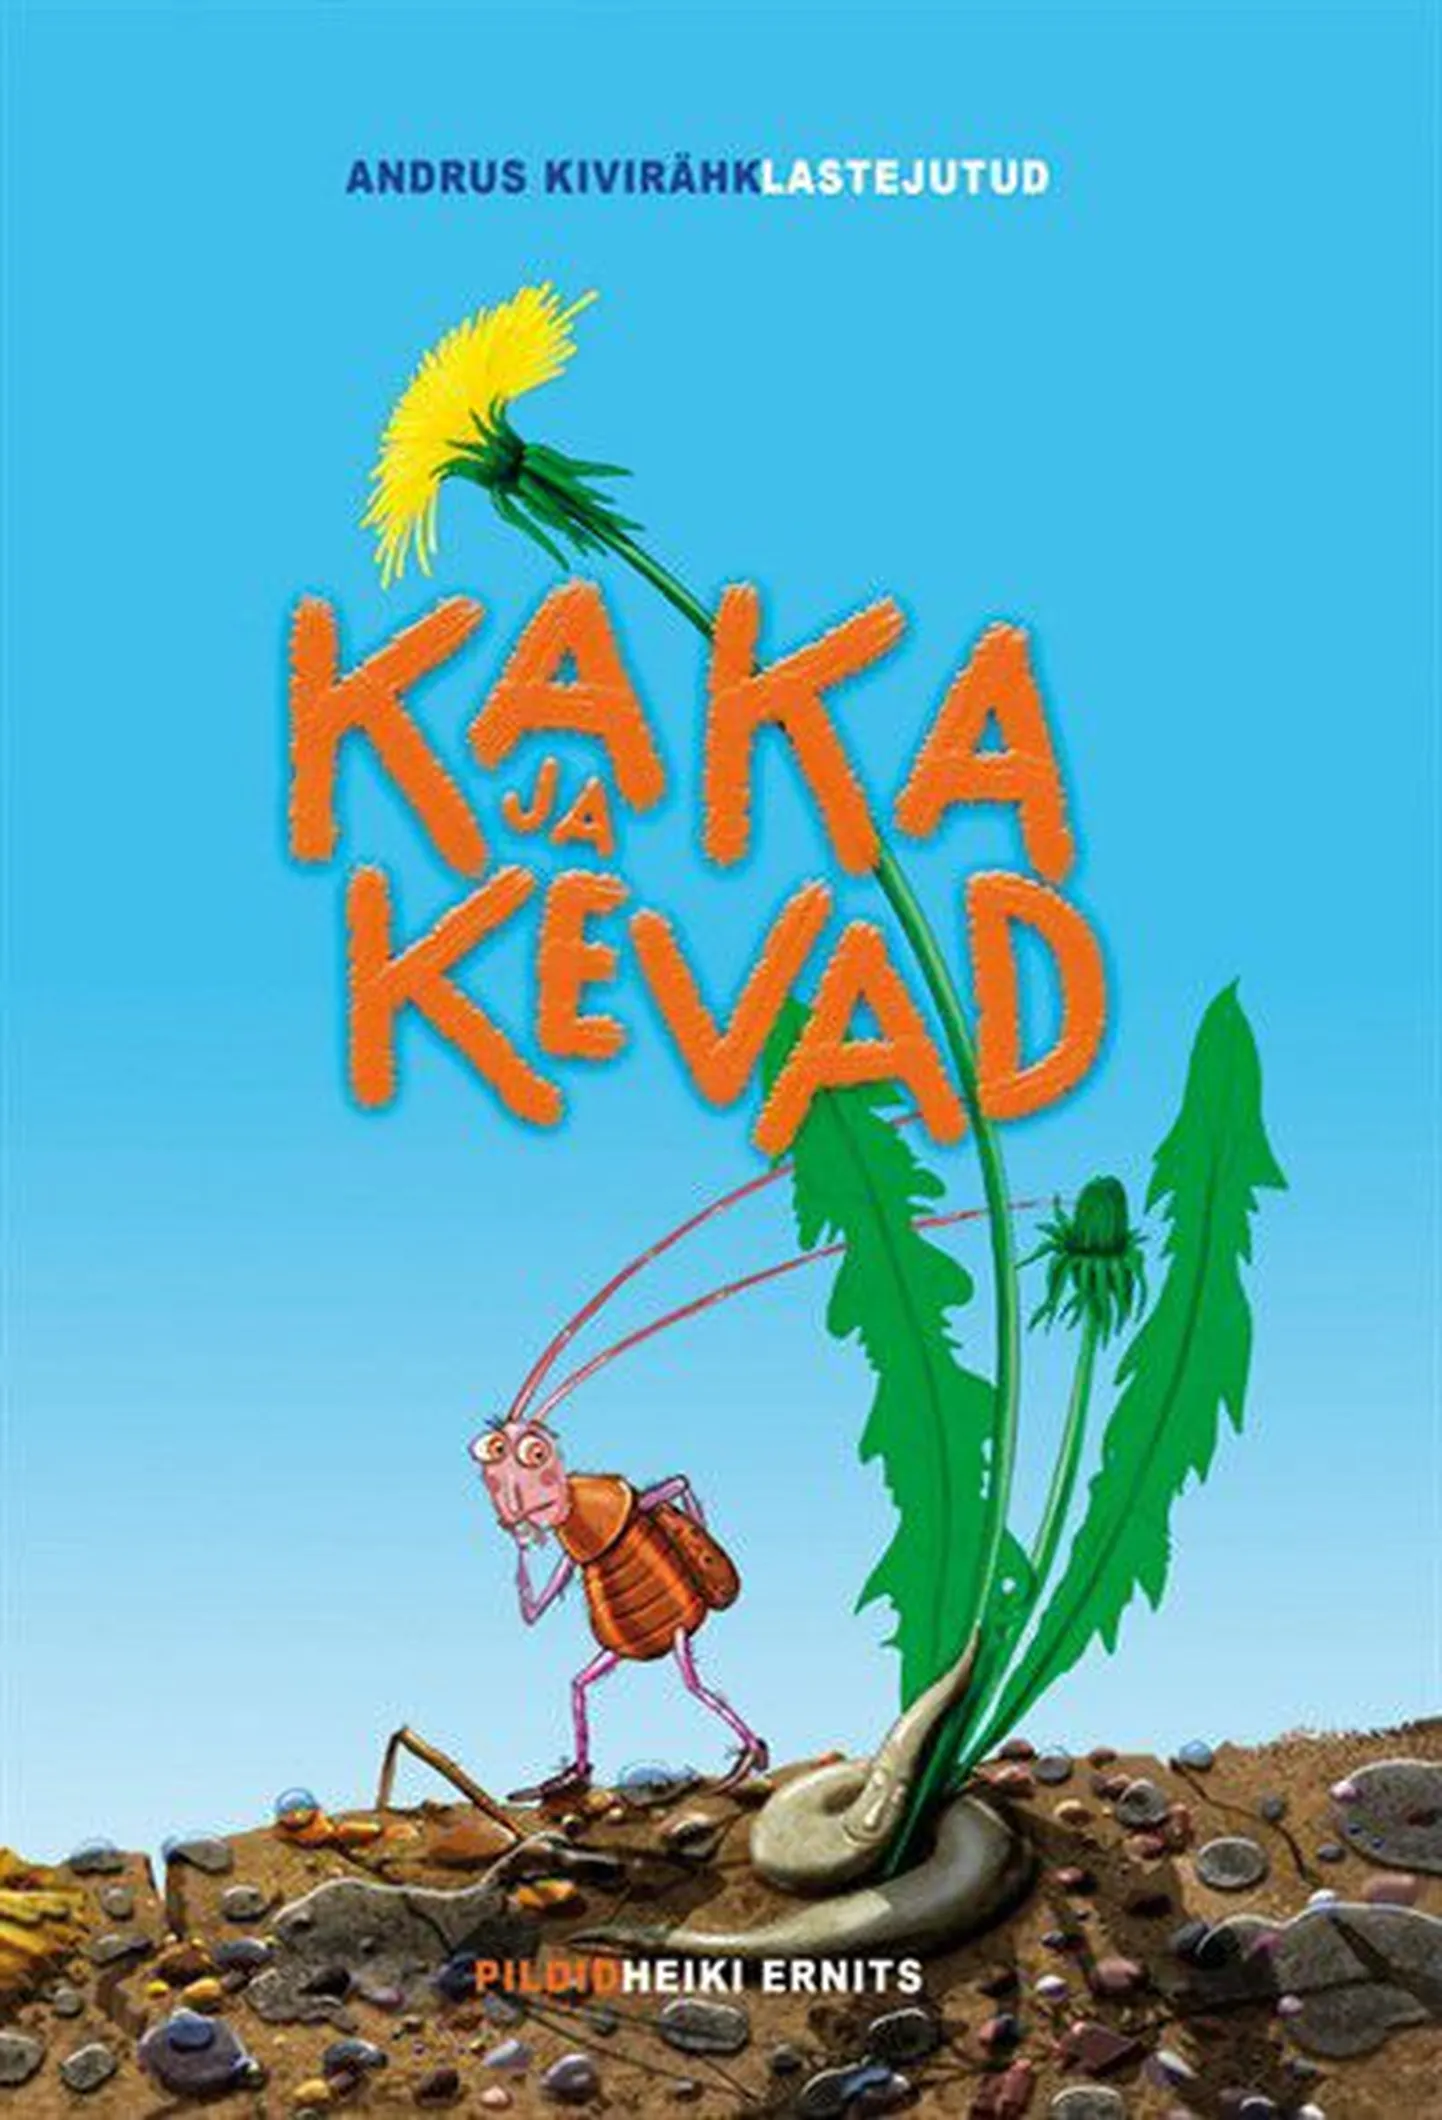 Обложка книги Андруса Кивиряхка «Kaka ja kevad».